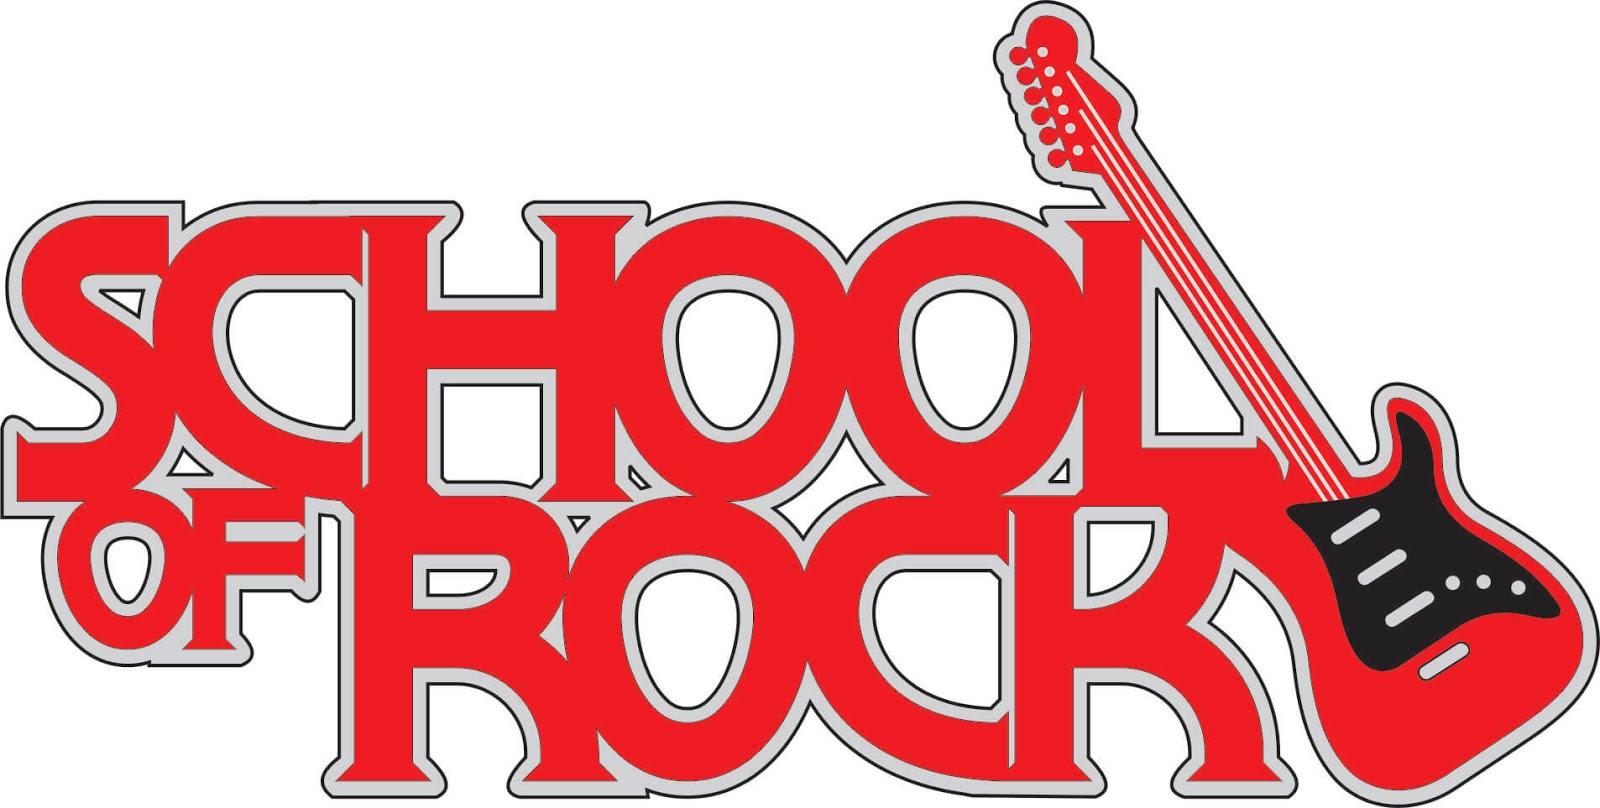 SCHOOL OF ROCK 2020